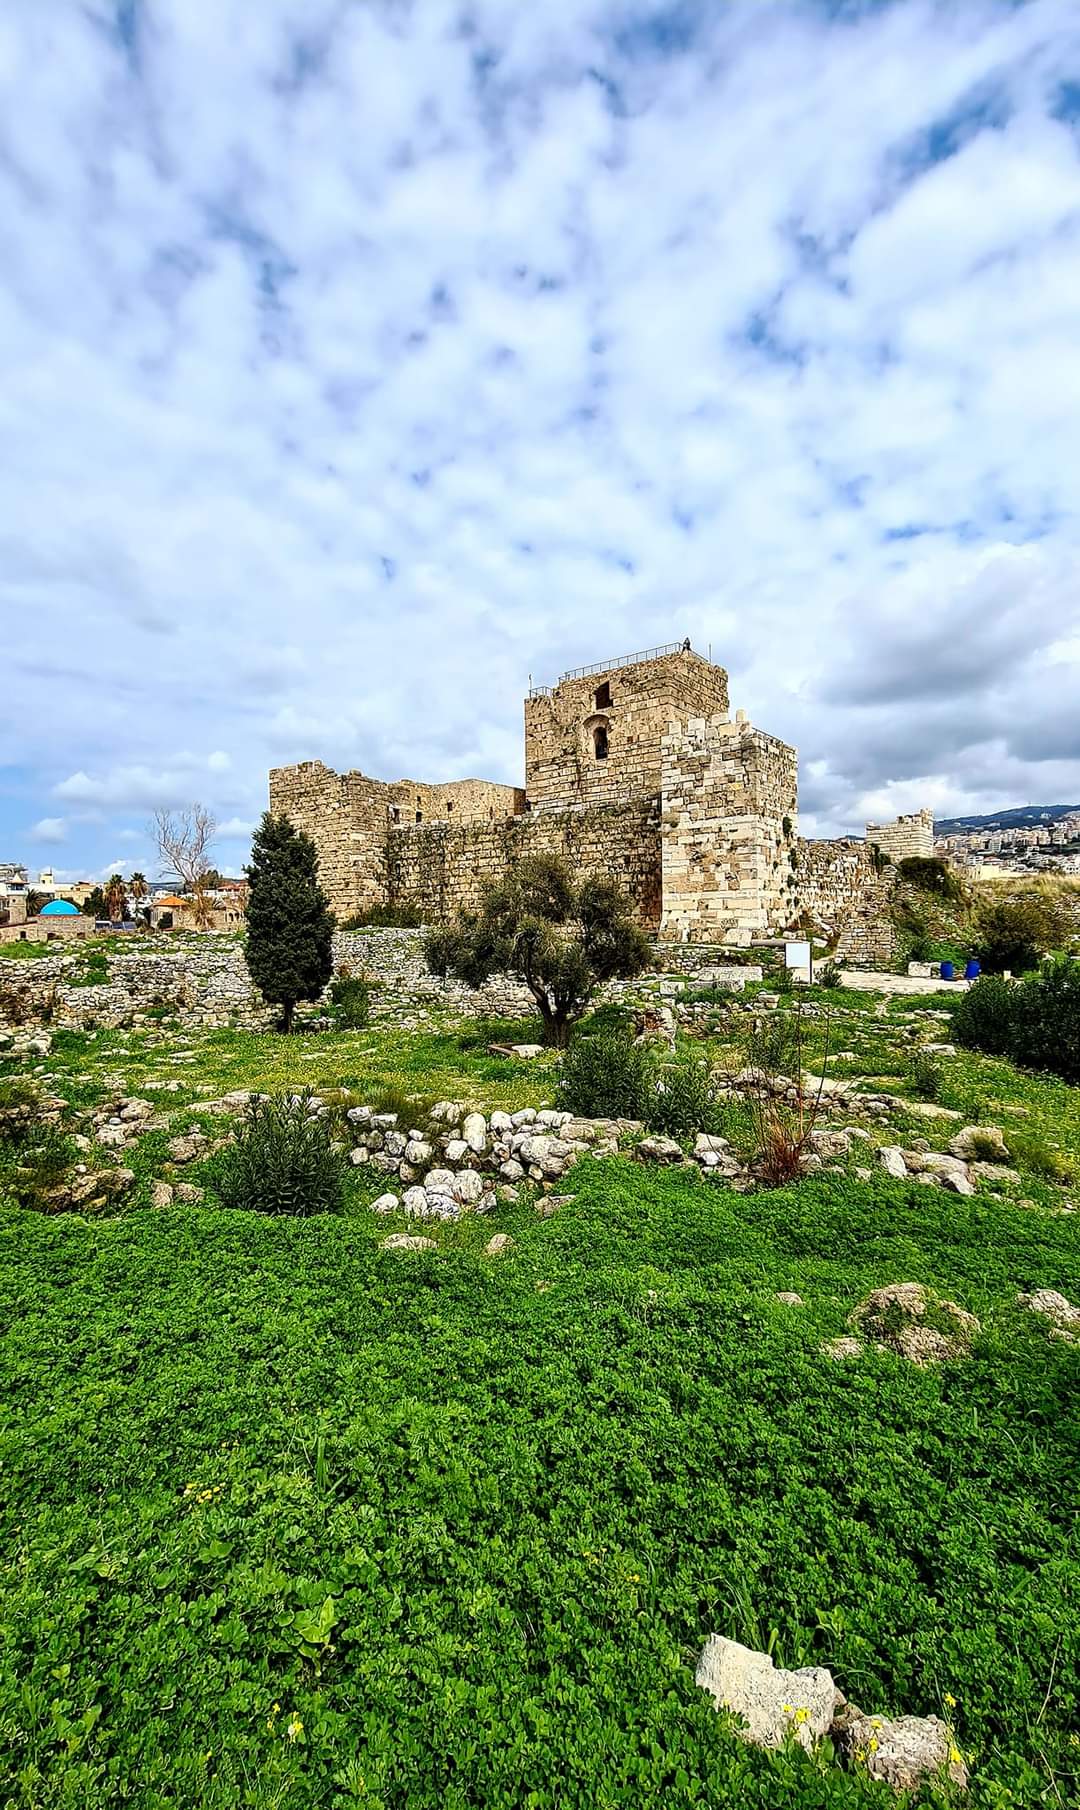 Crusader castle Byblos Lebanon